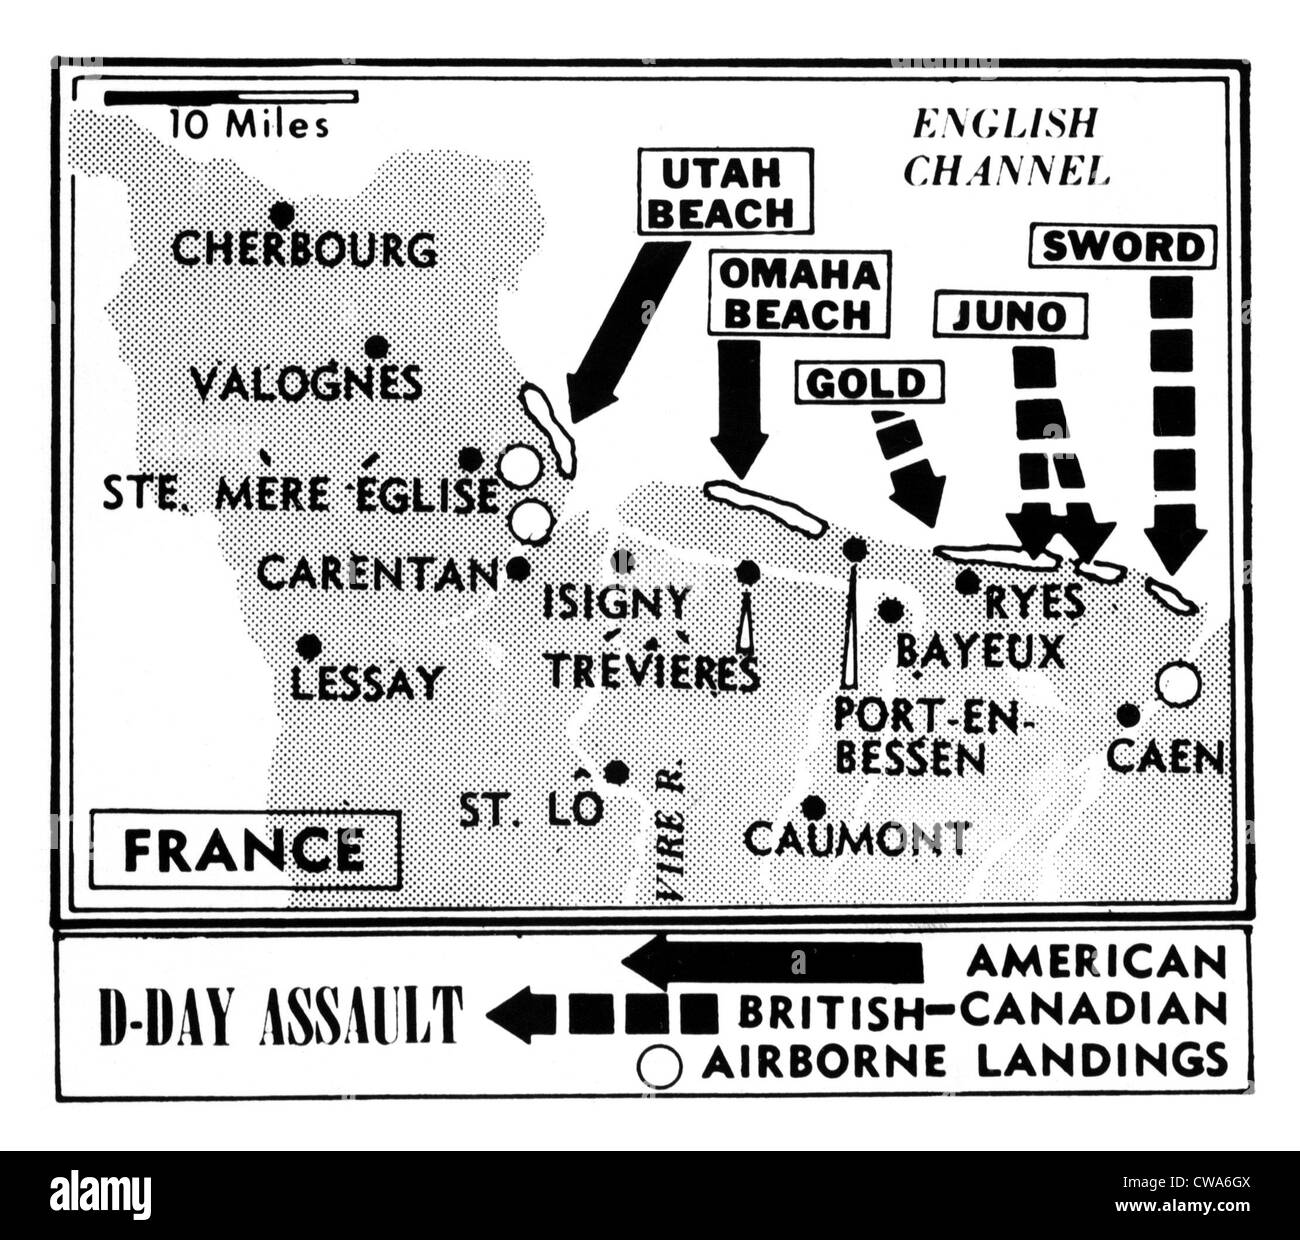 D-Day, Karte Detaillierung Alliierten Invasion in der Normandie, Frankreich, 1944. Höflichkeit: CSU Archive / Everett Collection Stockfoto